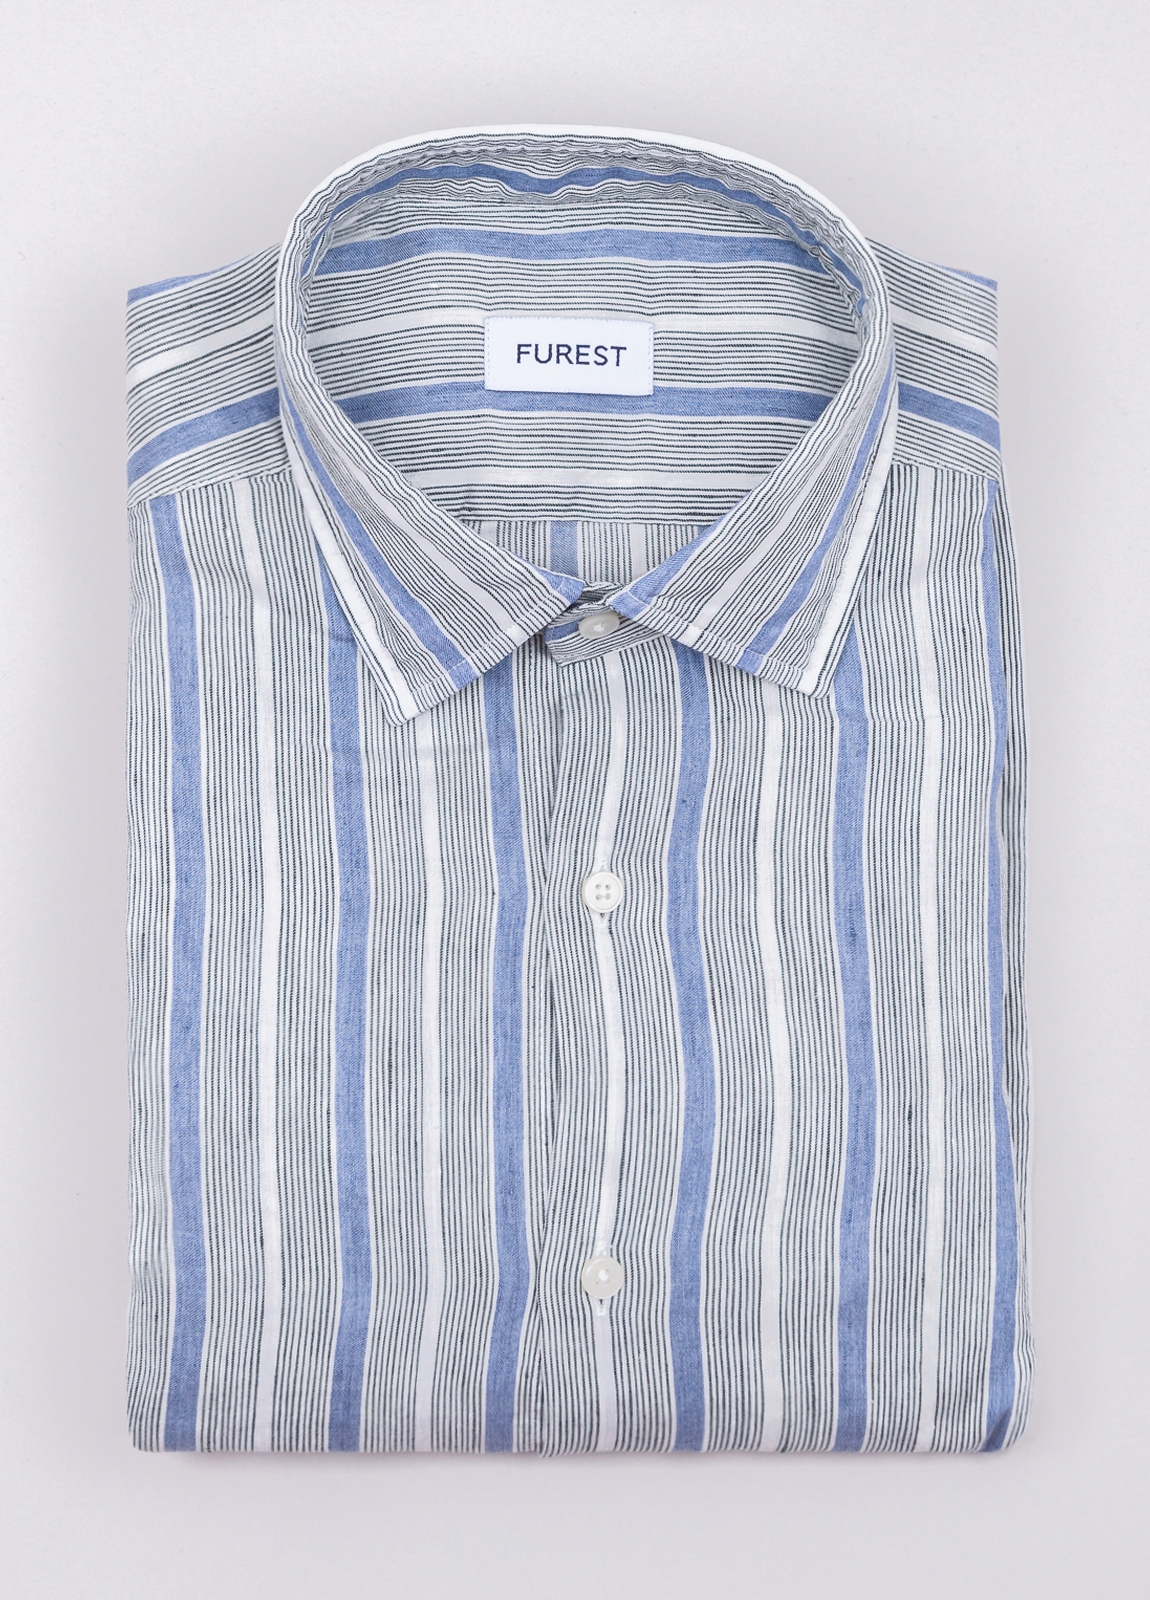 Camisa sport FUREST COLECCIÓN lino rayas azul y gris - Ítem1